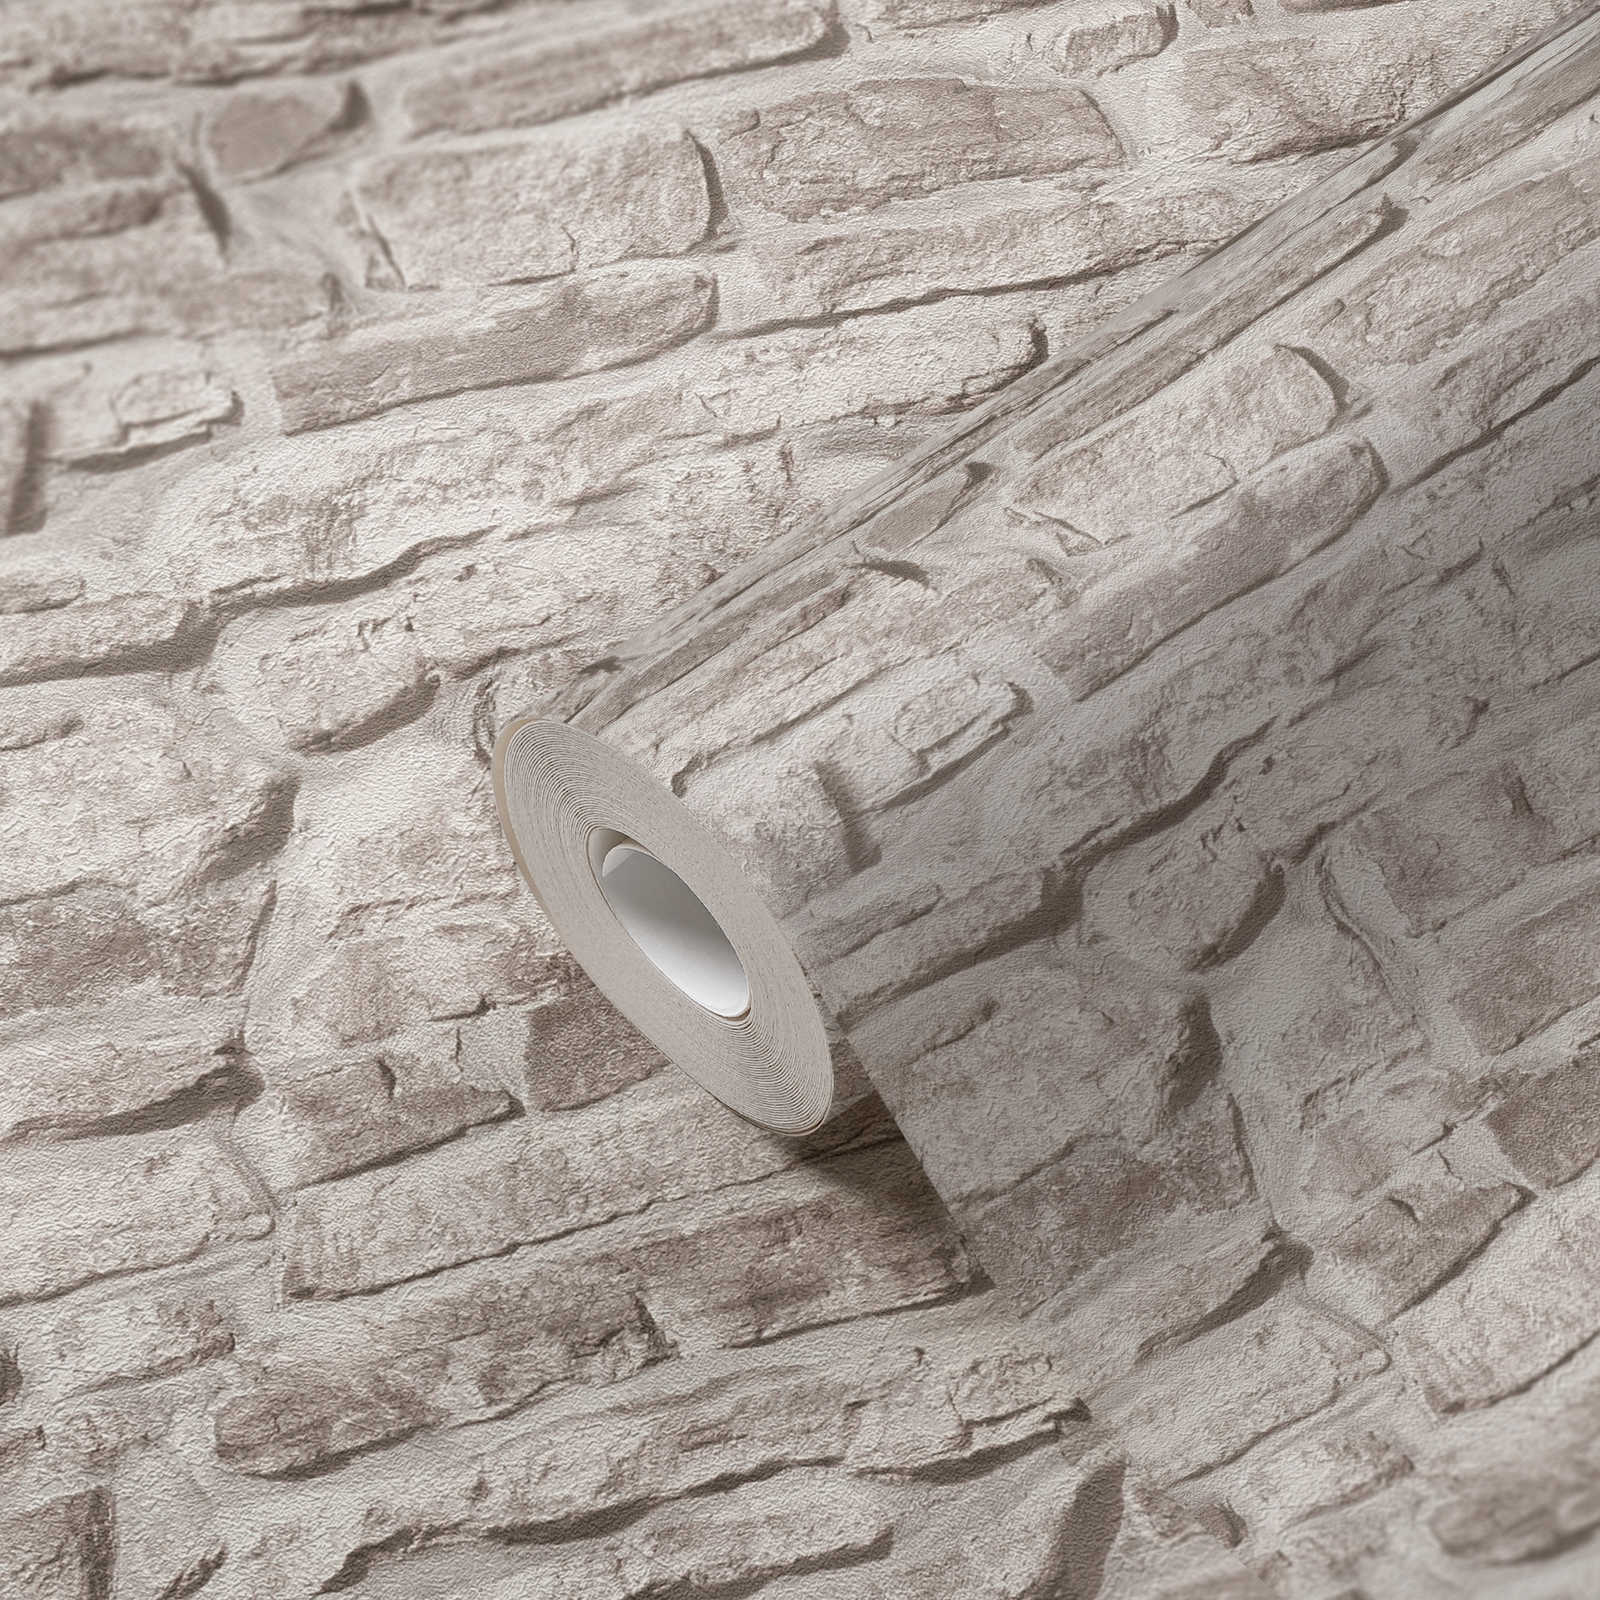             Vliestapete rustikale Steinoptik Ziegelmauer – Greige, Grau, Weiß
        